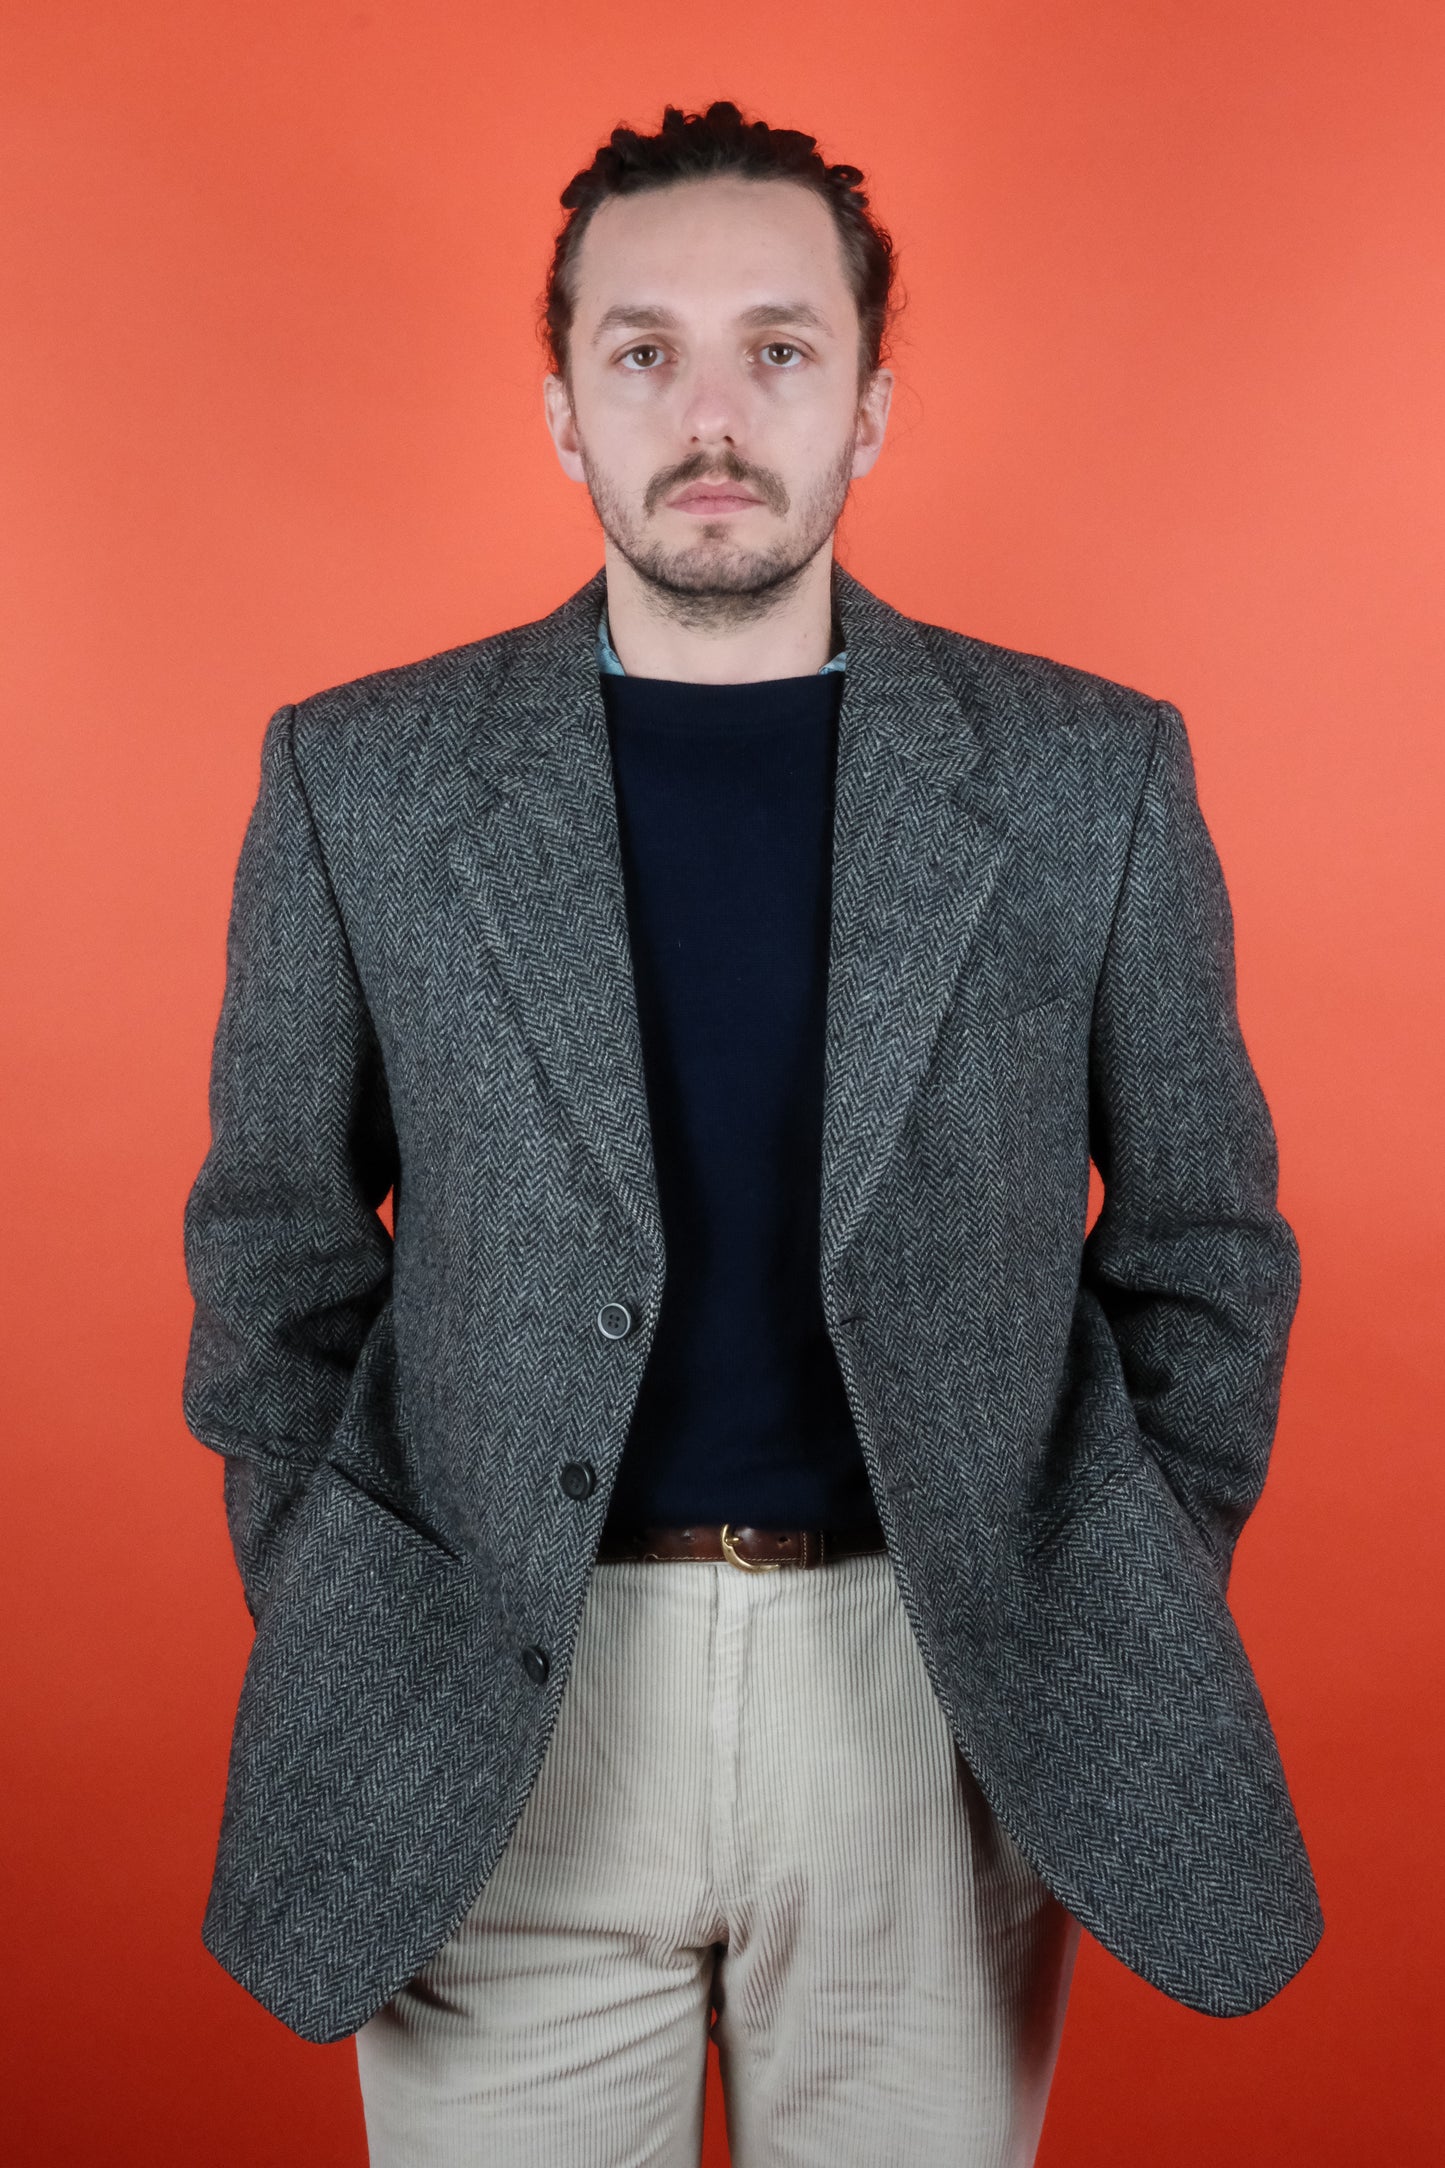 Harris Tweed Wool Grey Suit Jacket 'L' - vintage clothing clochard92.com